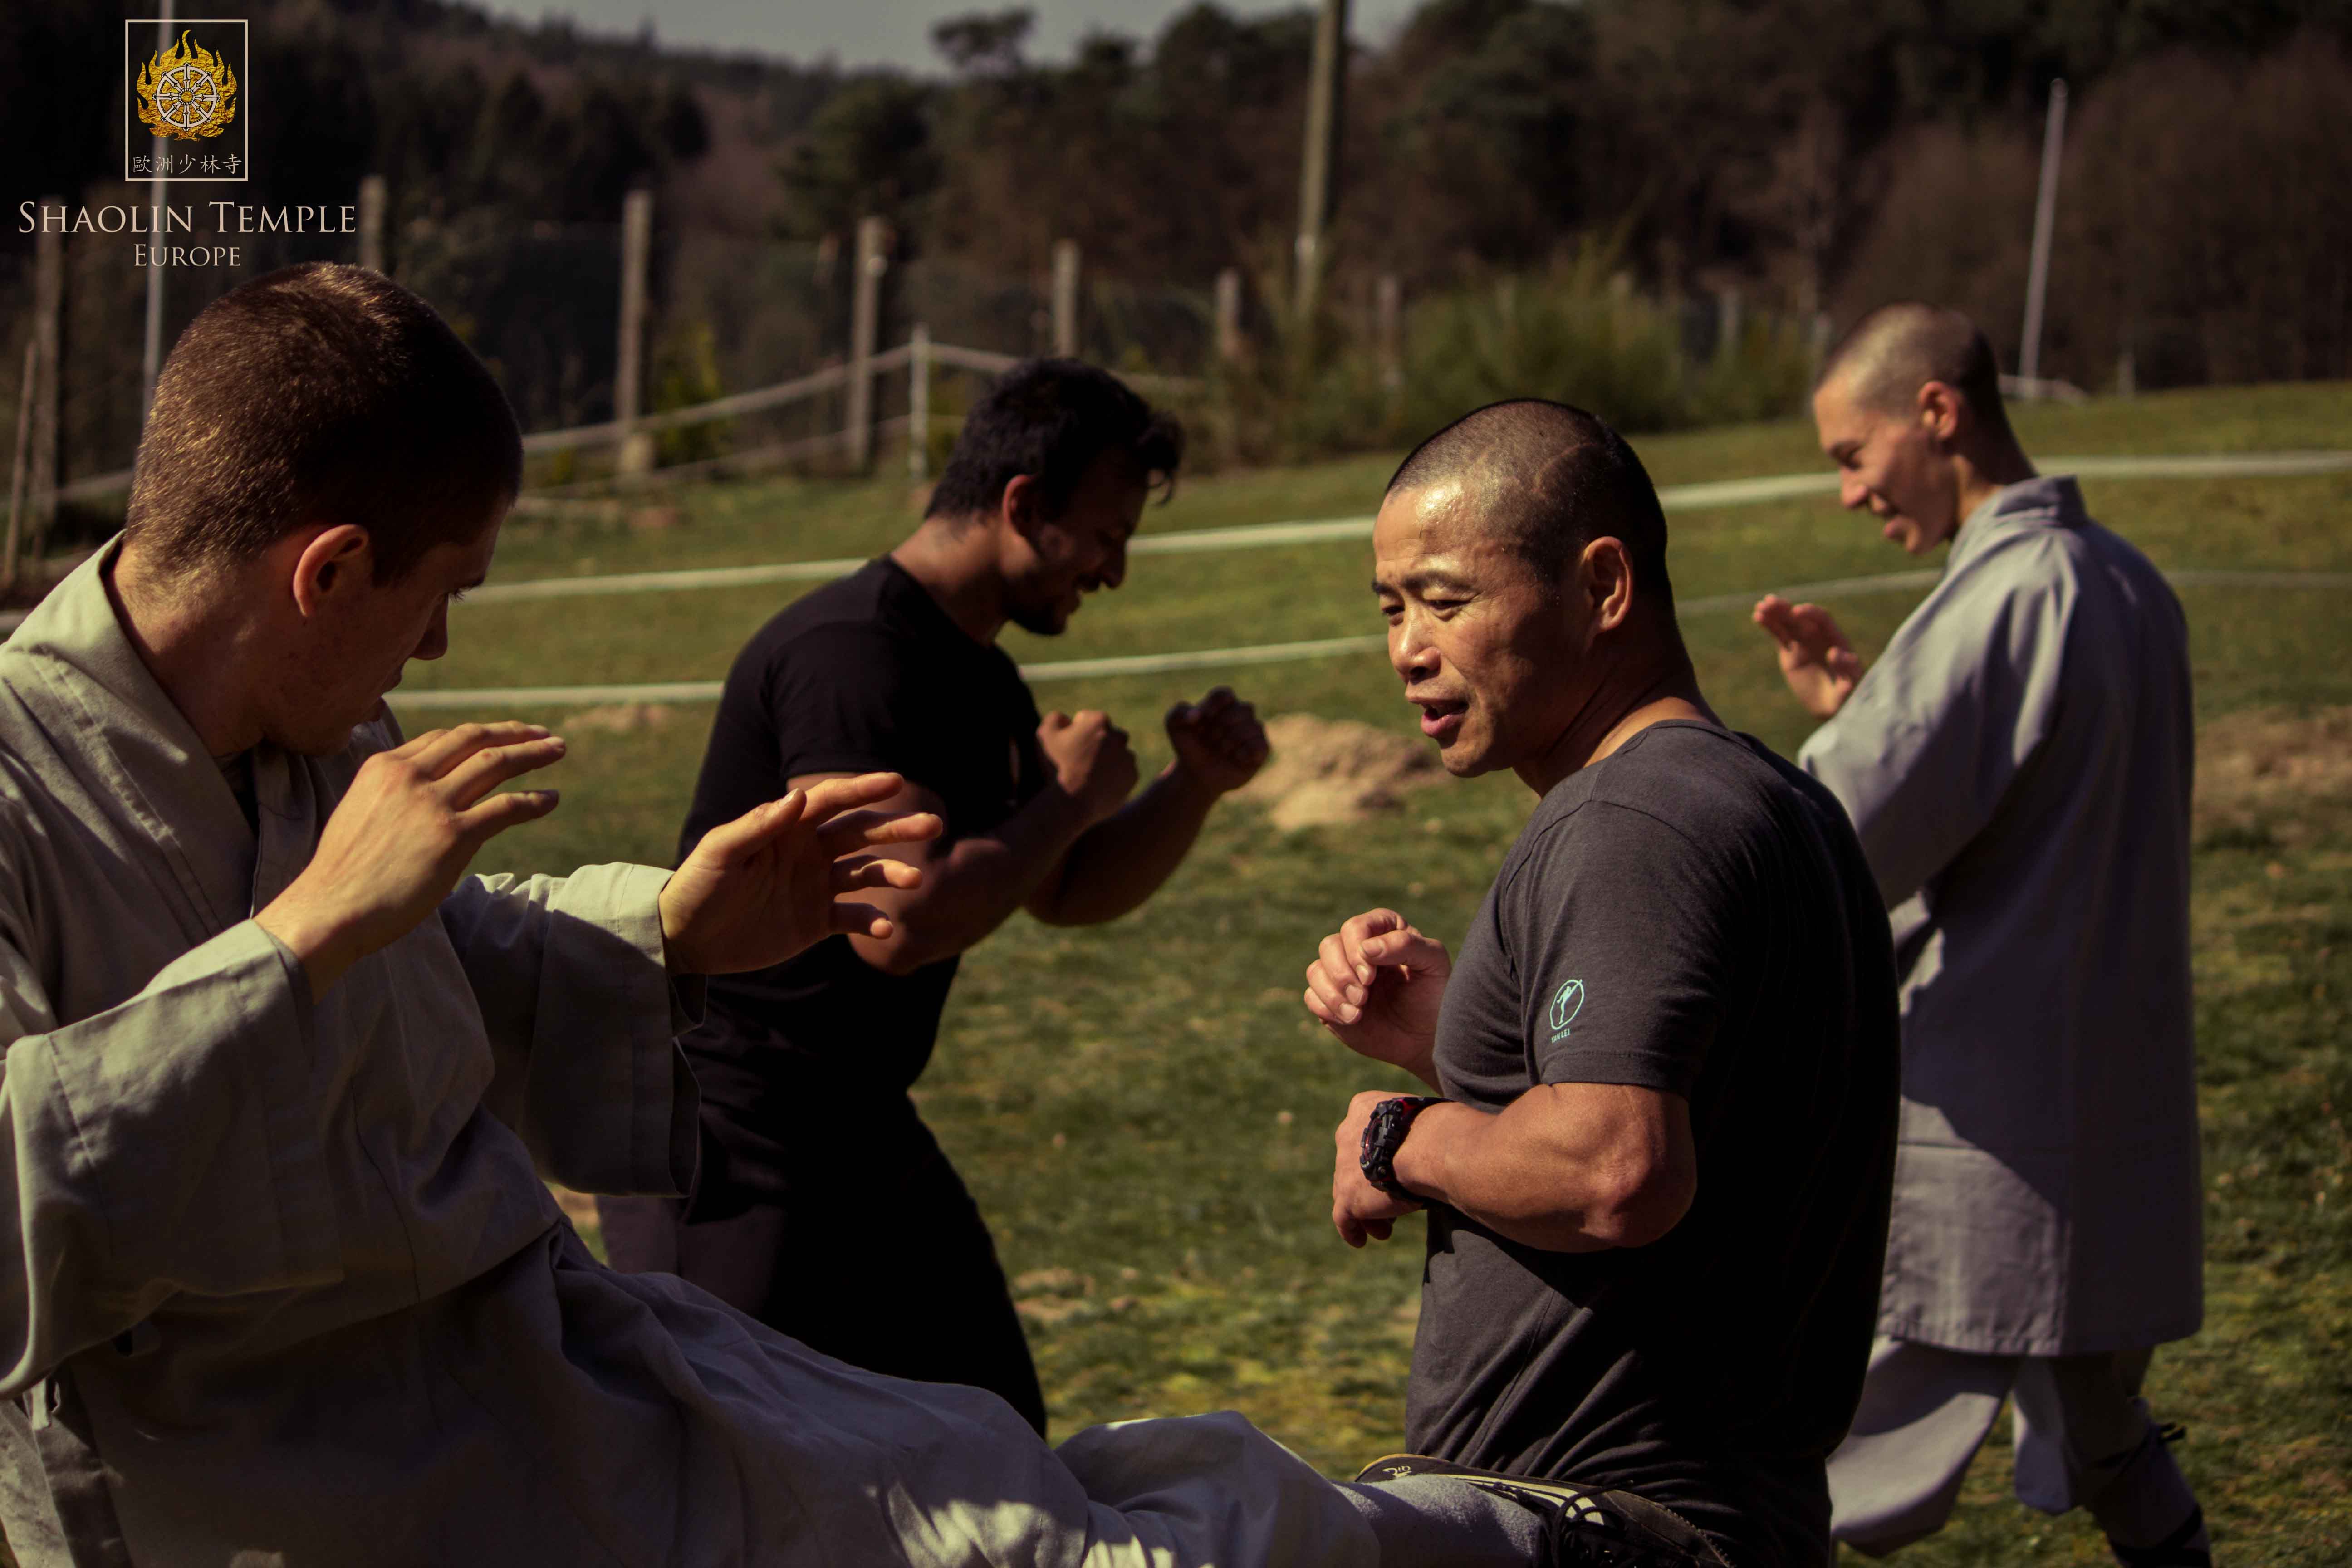 Training with Shifu YanLei